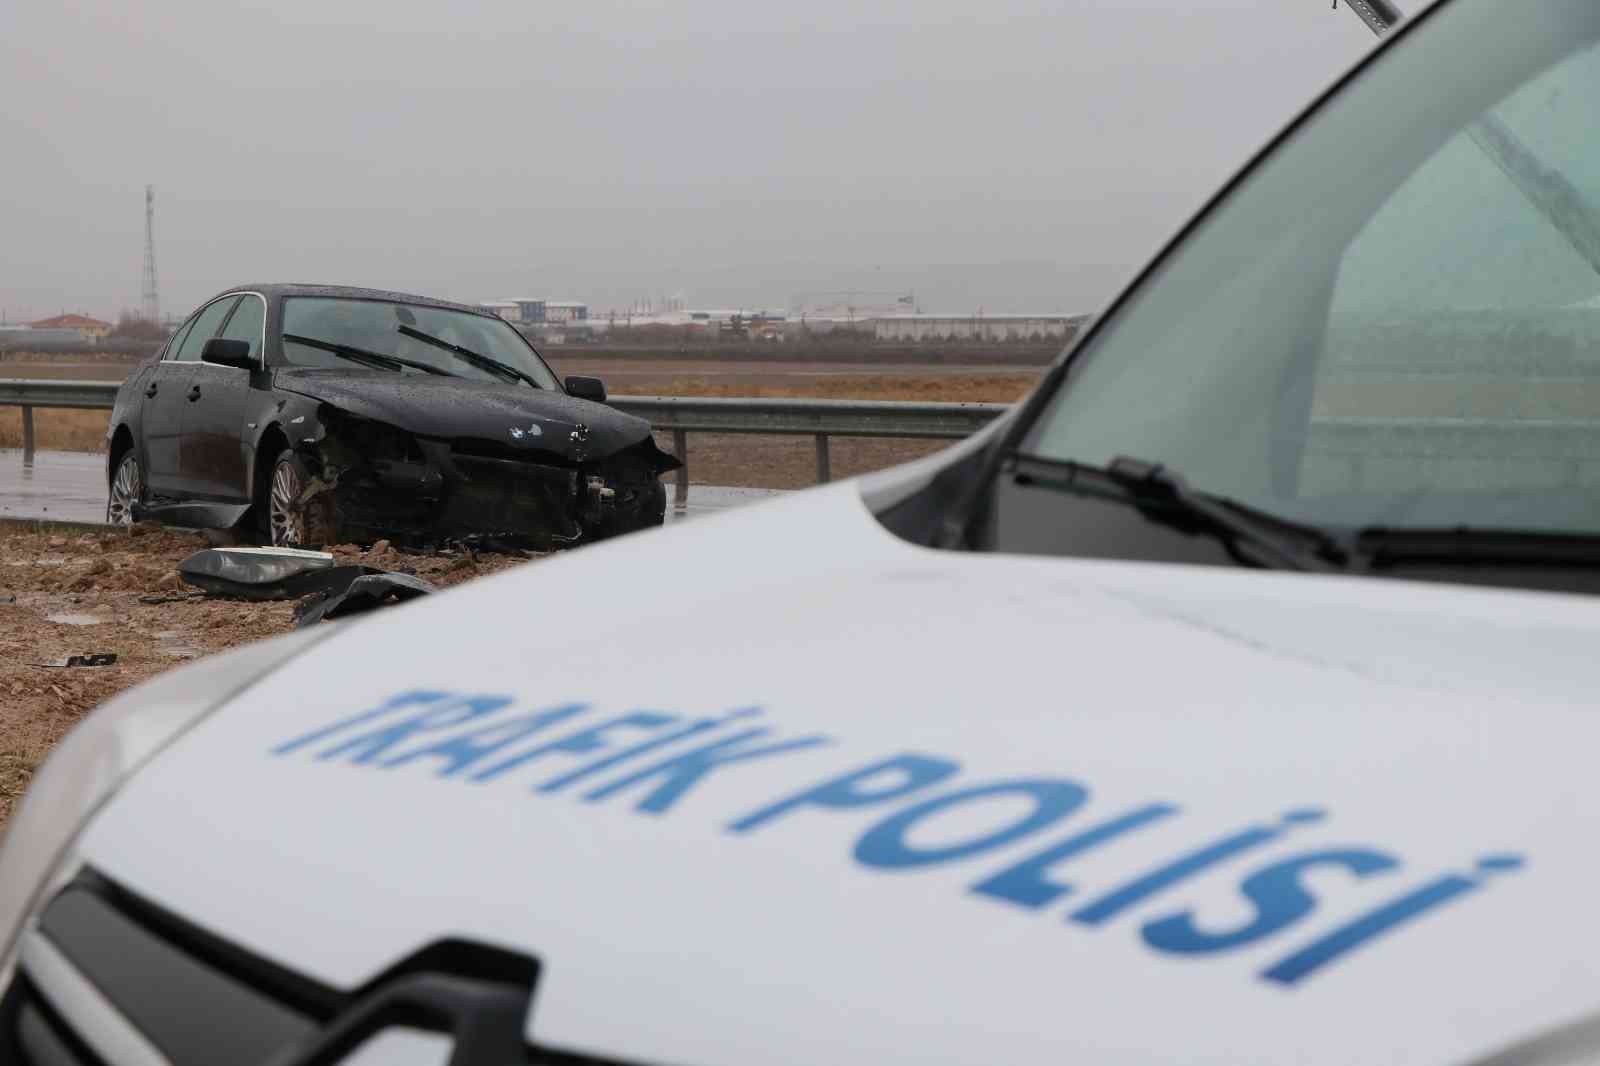 Aksaray’da otomobil refüje çarptı: 2 yaralı #aksaray